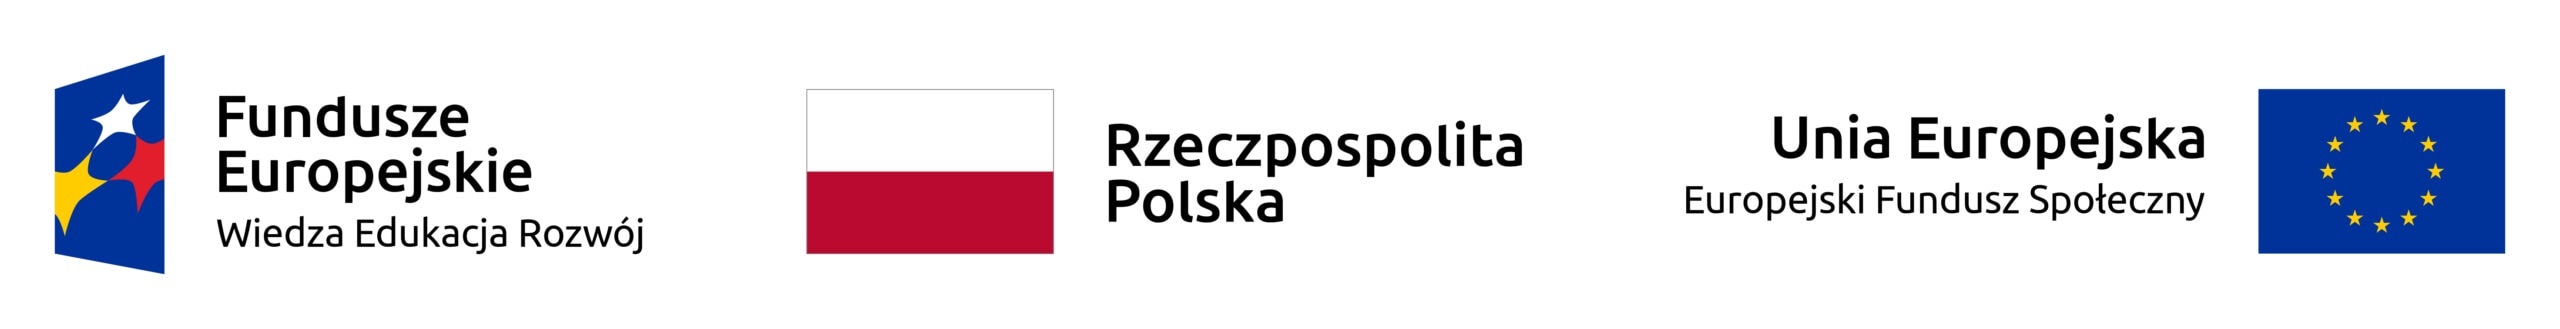 Logotyp Funduszy Europejskich, Rzeczpospolitej Polskiej oraz Unii Europejskiej